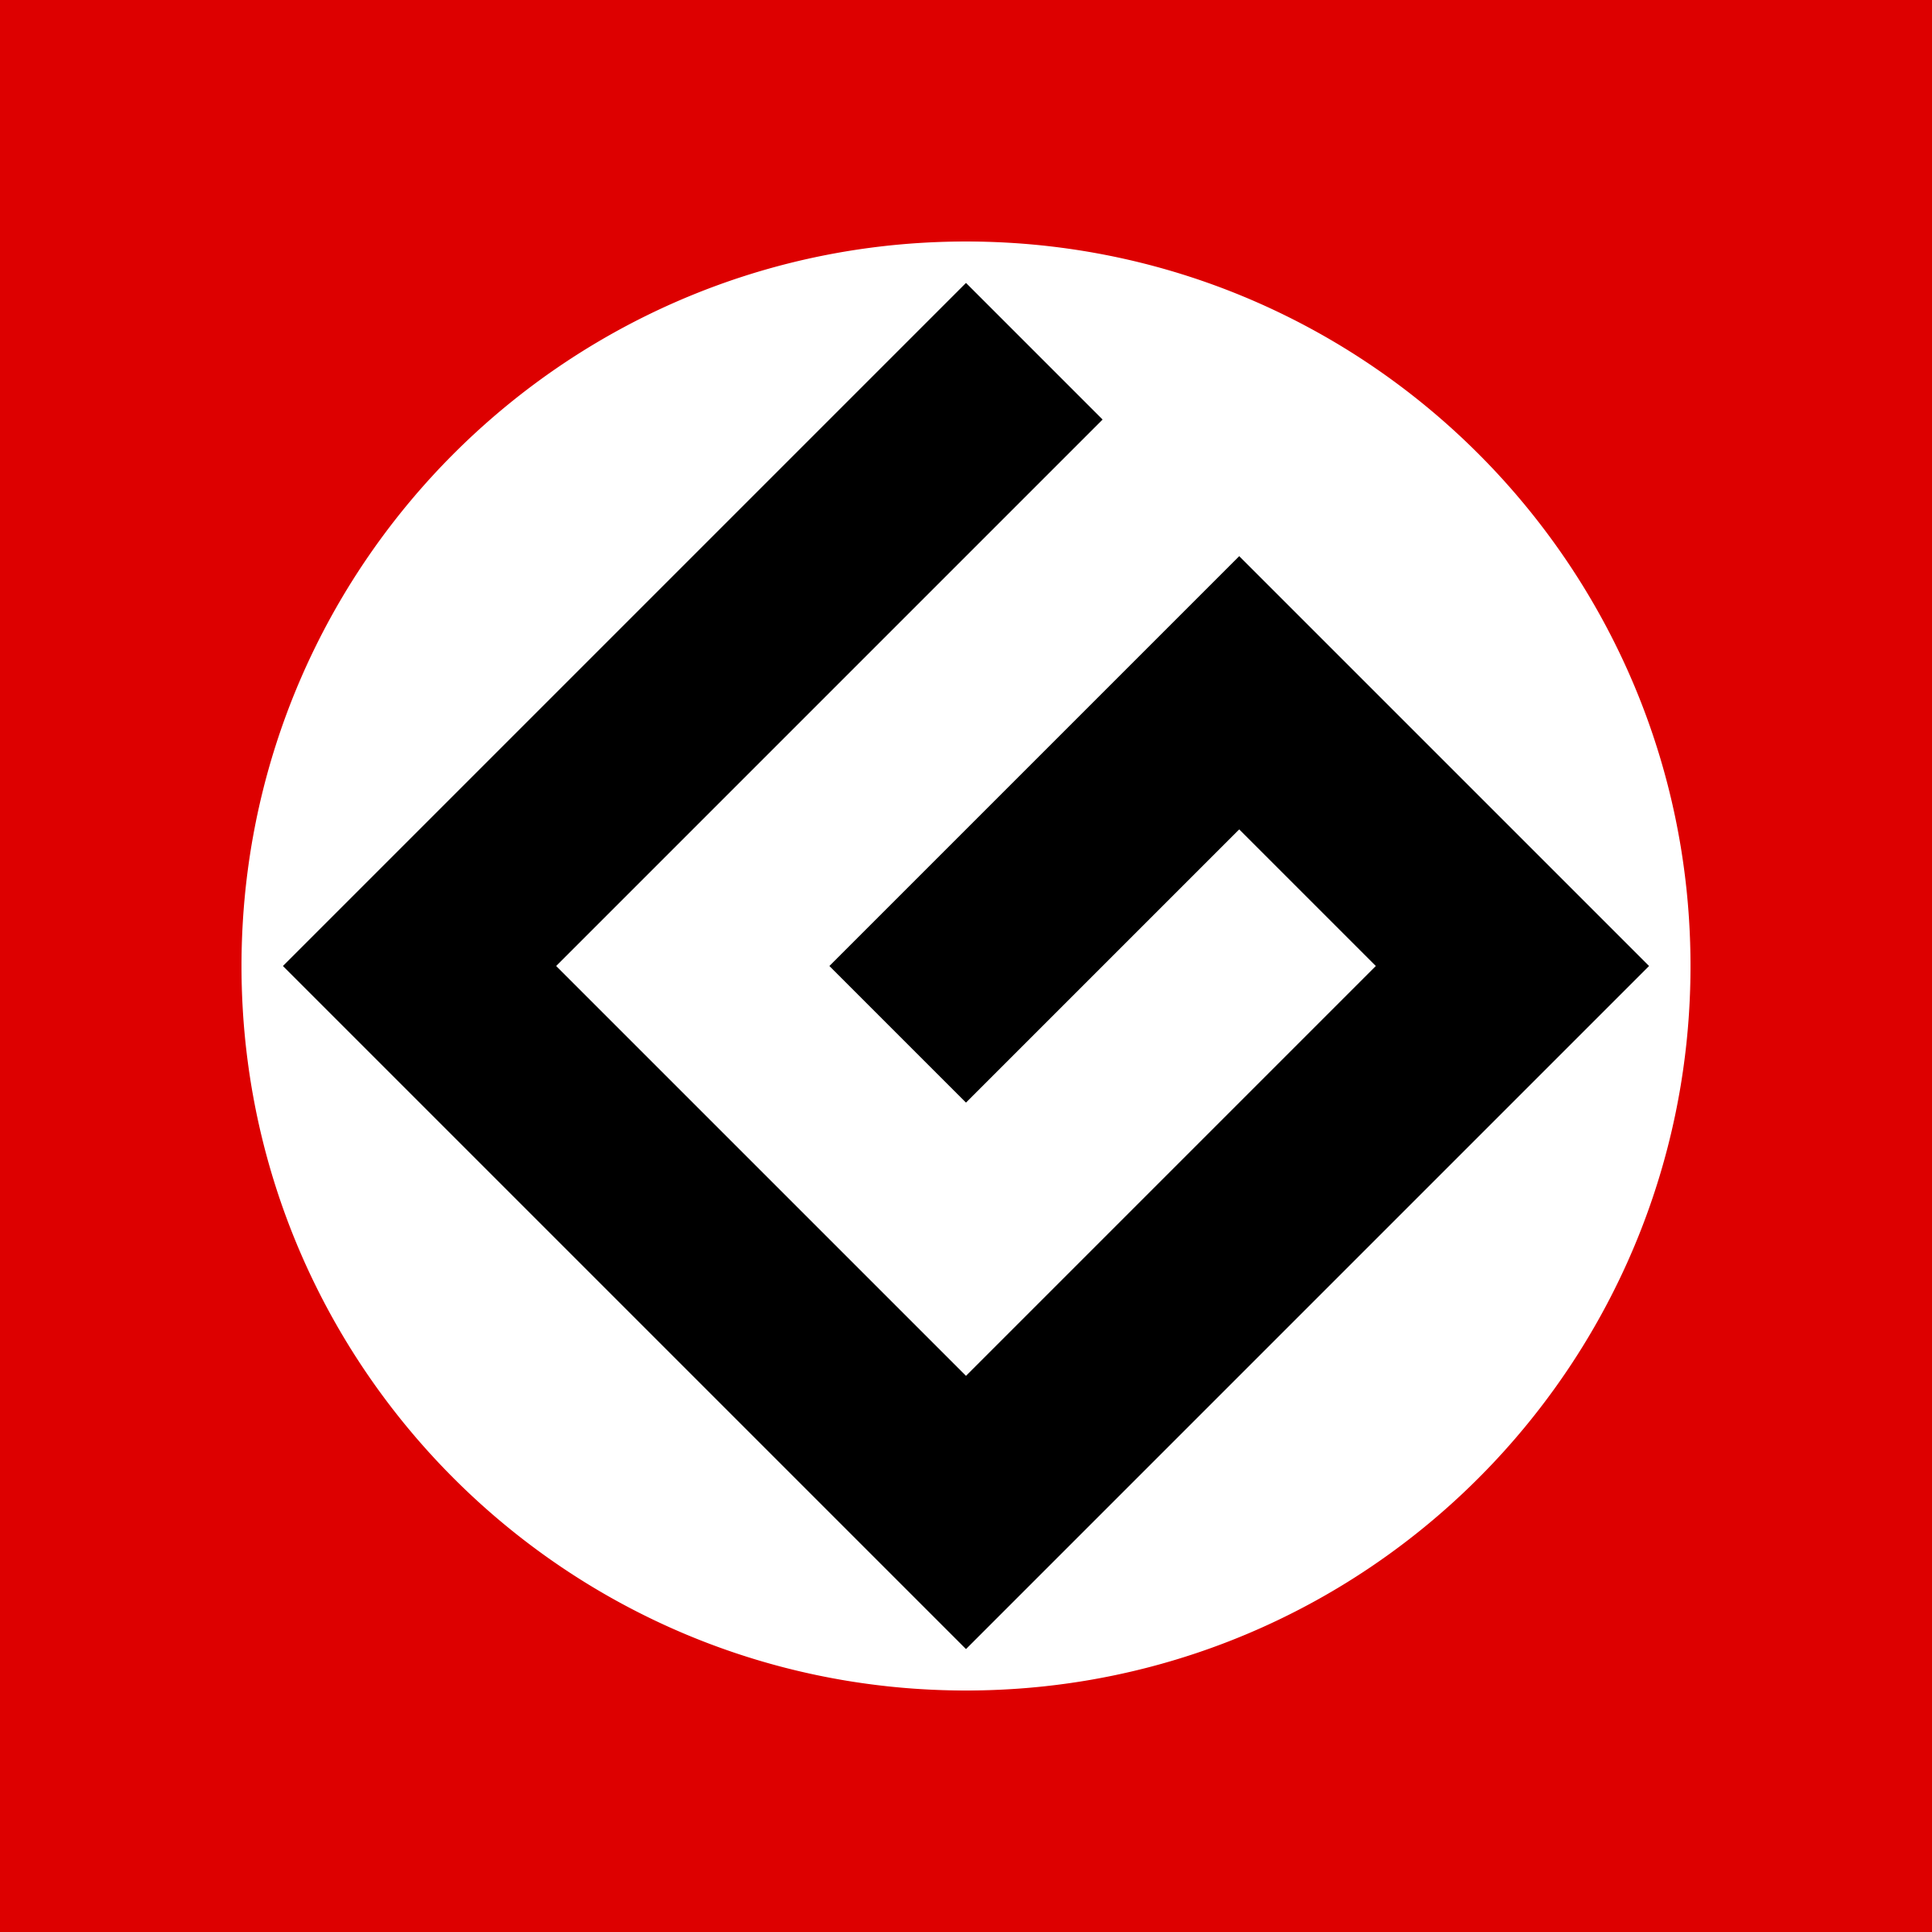 Grammar Nazi HD wallpapers, Desktop wallpaper - most viewed